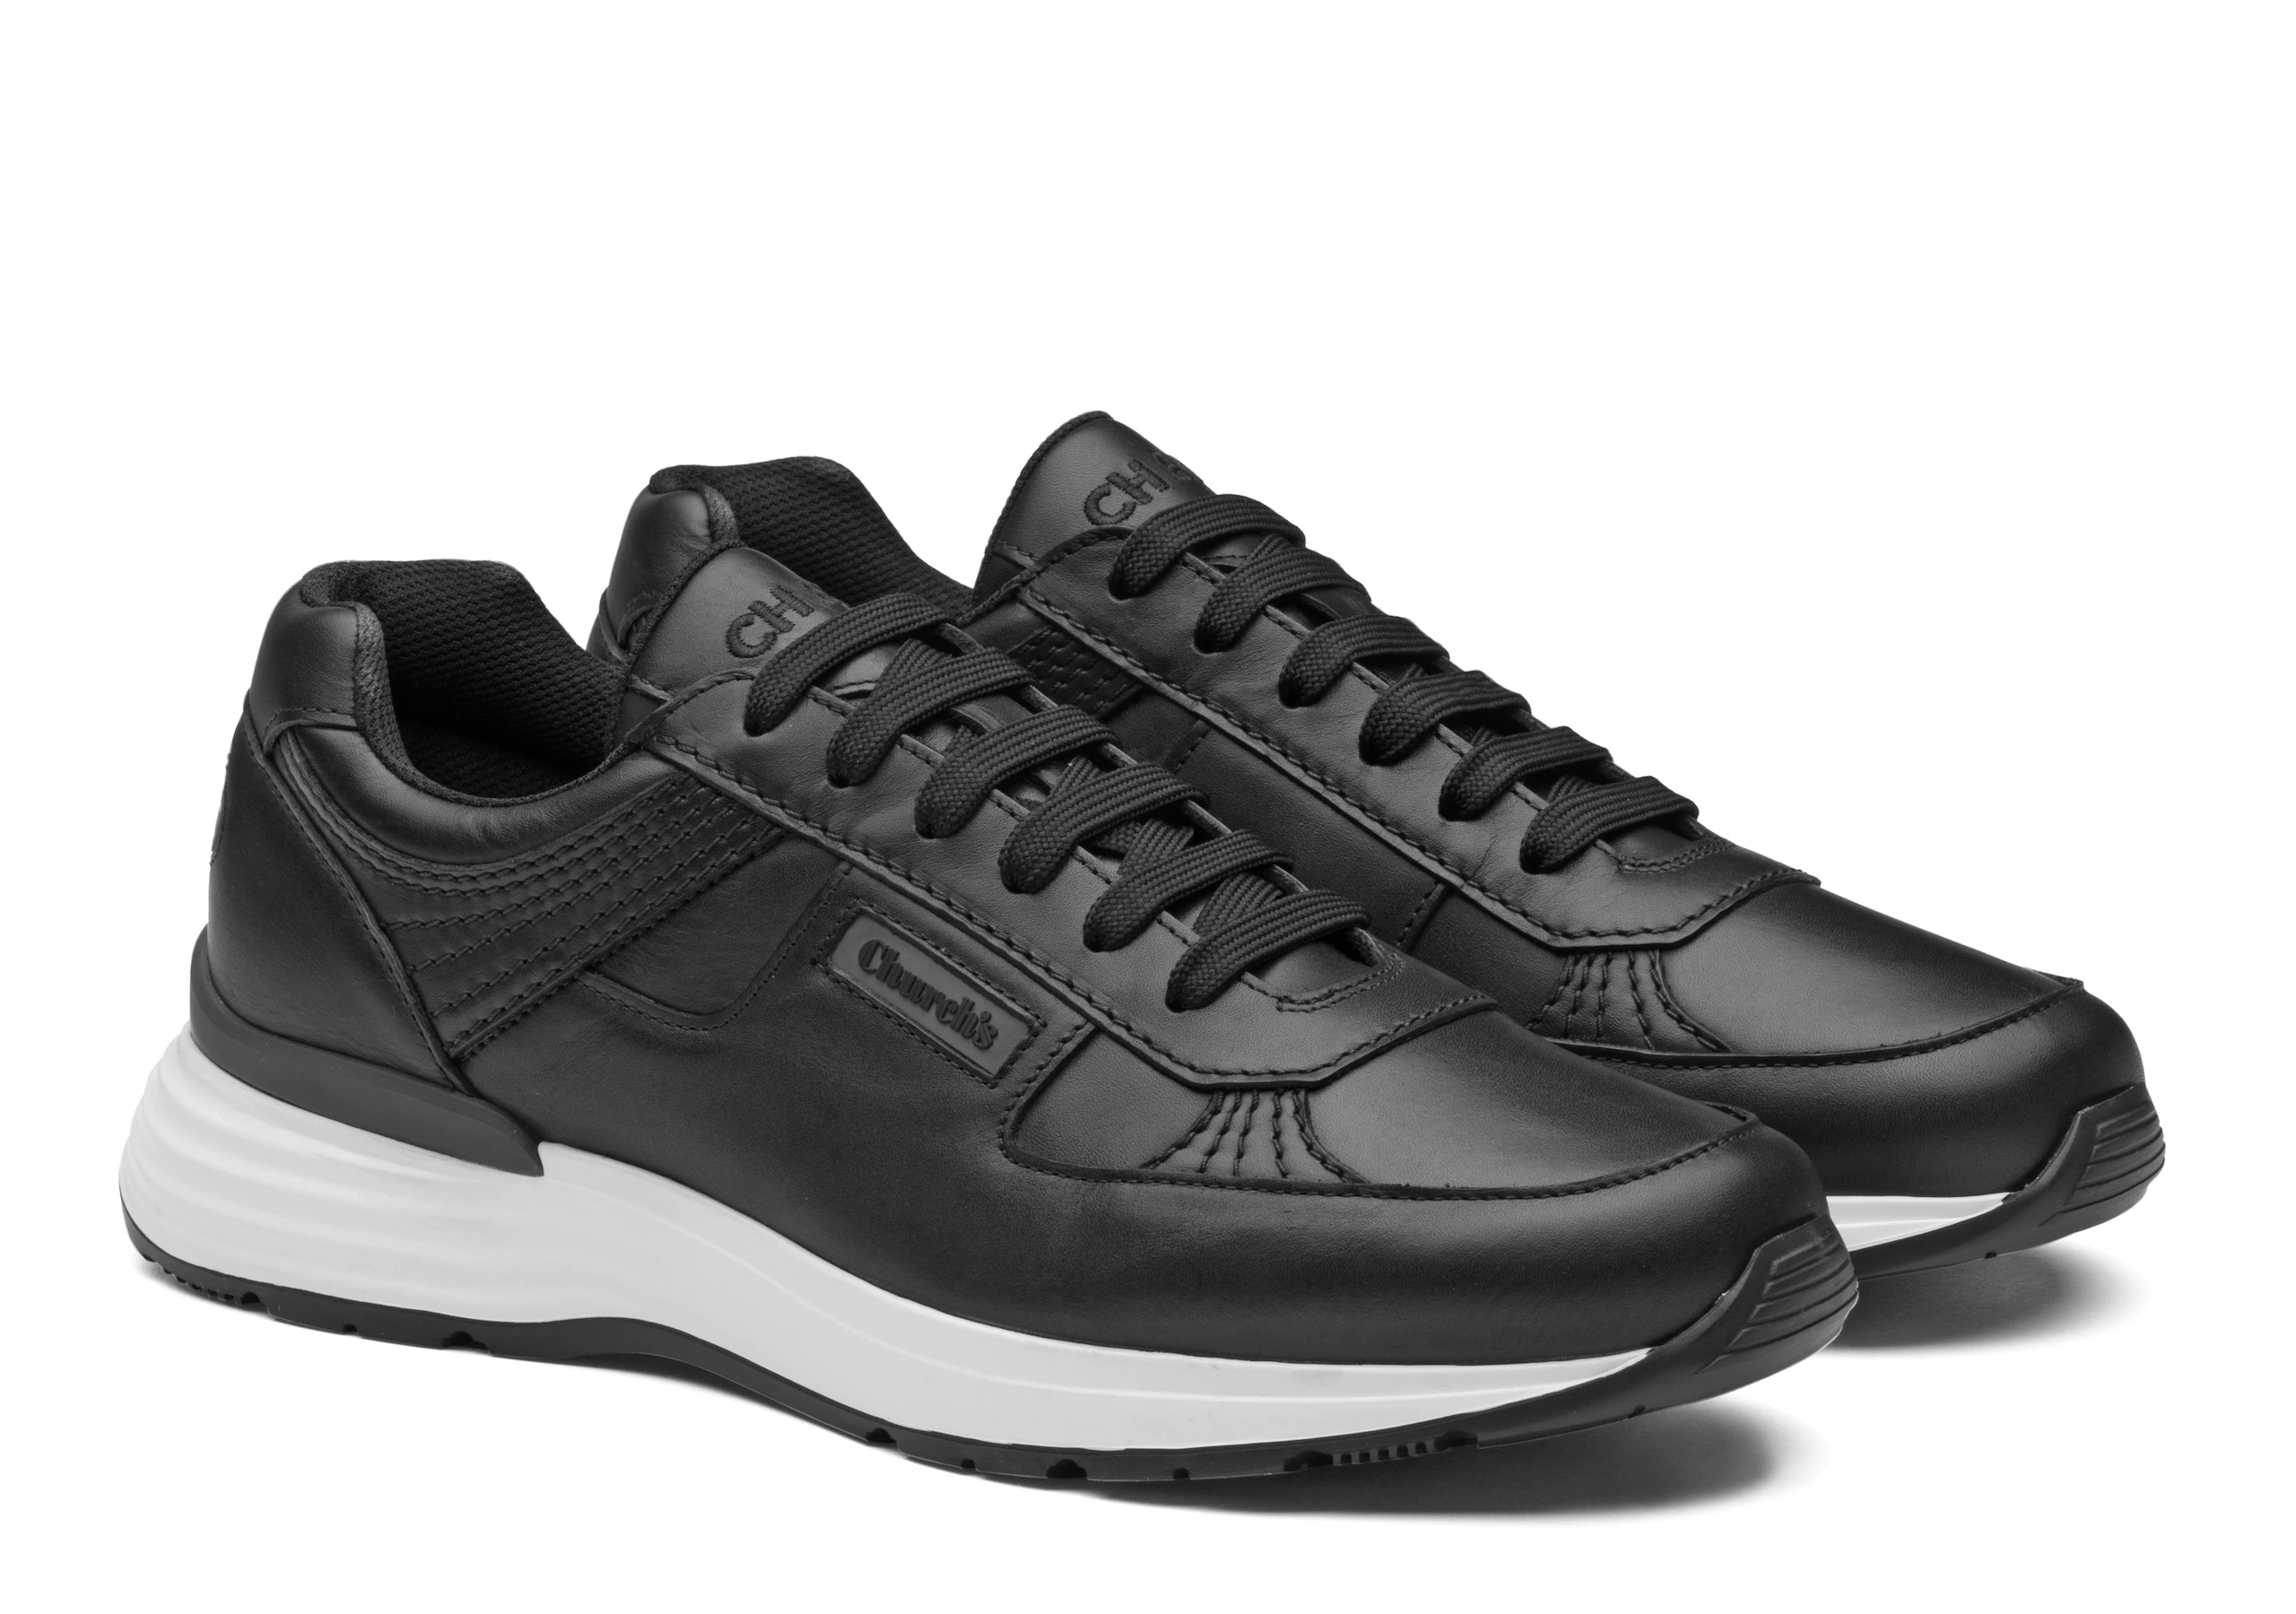 Ch873
Plume Calf Leather Retro Sneaker Black - 2